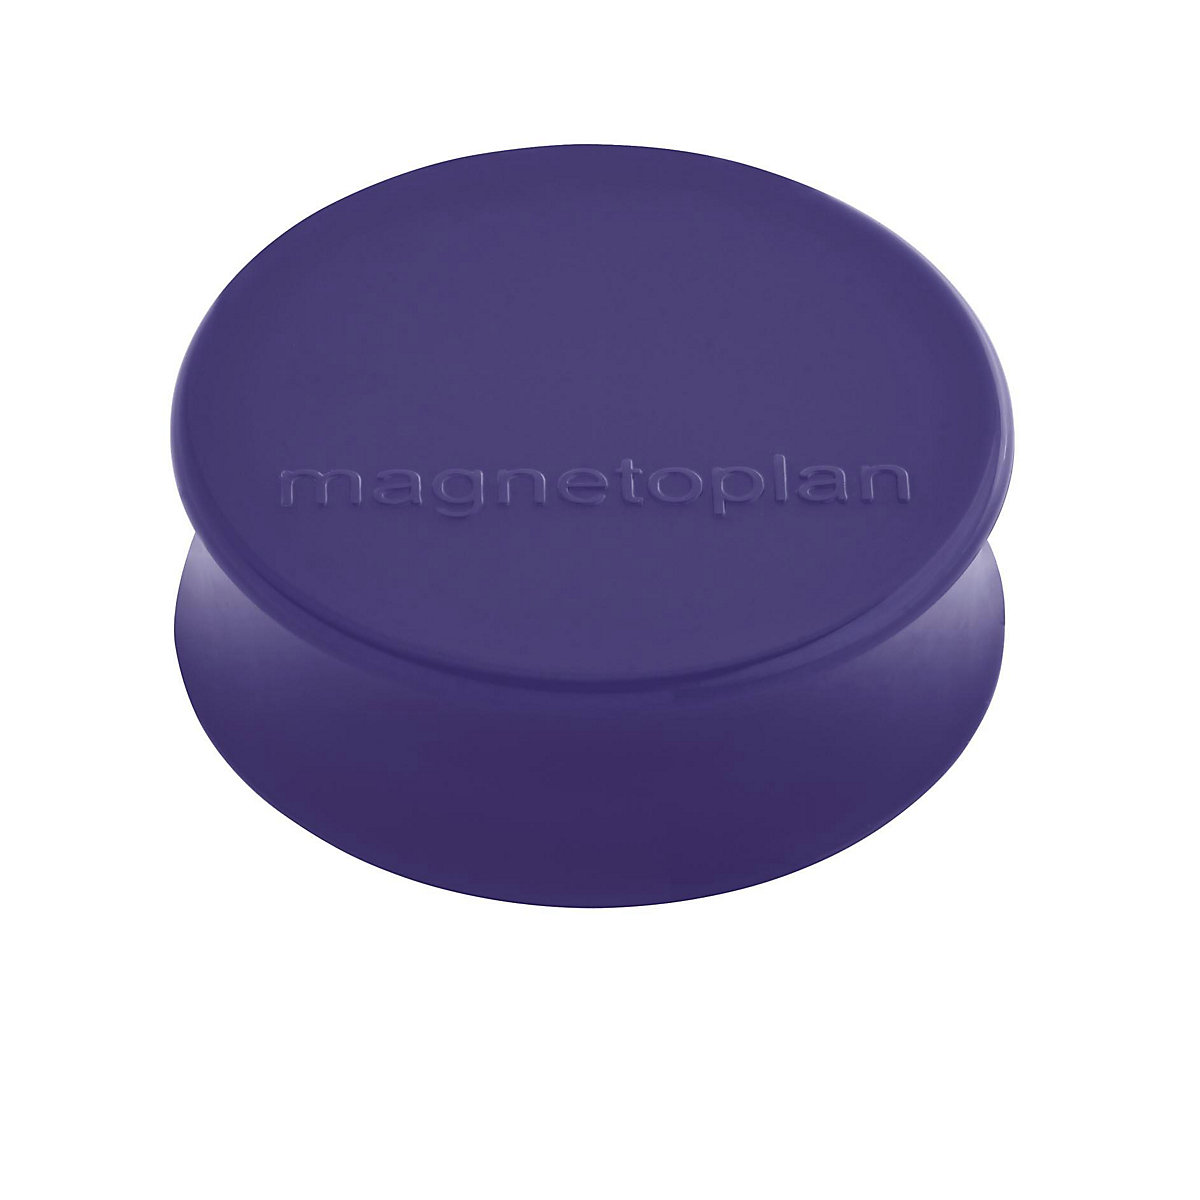 Ergo-Magnet magnetoplan, Ø 34 mm, VE 50 Stk, violett-12